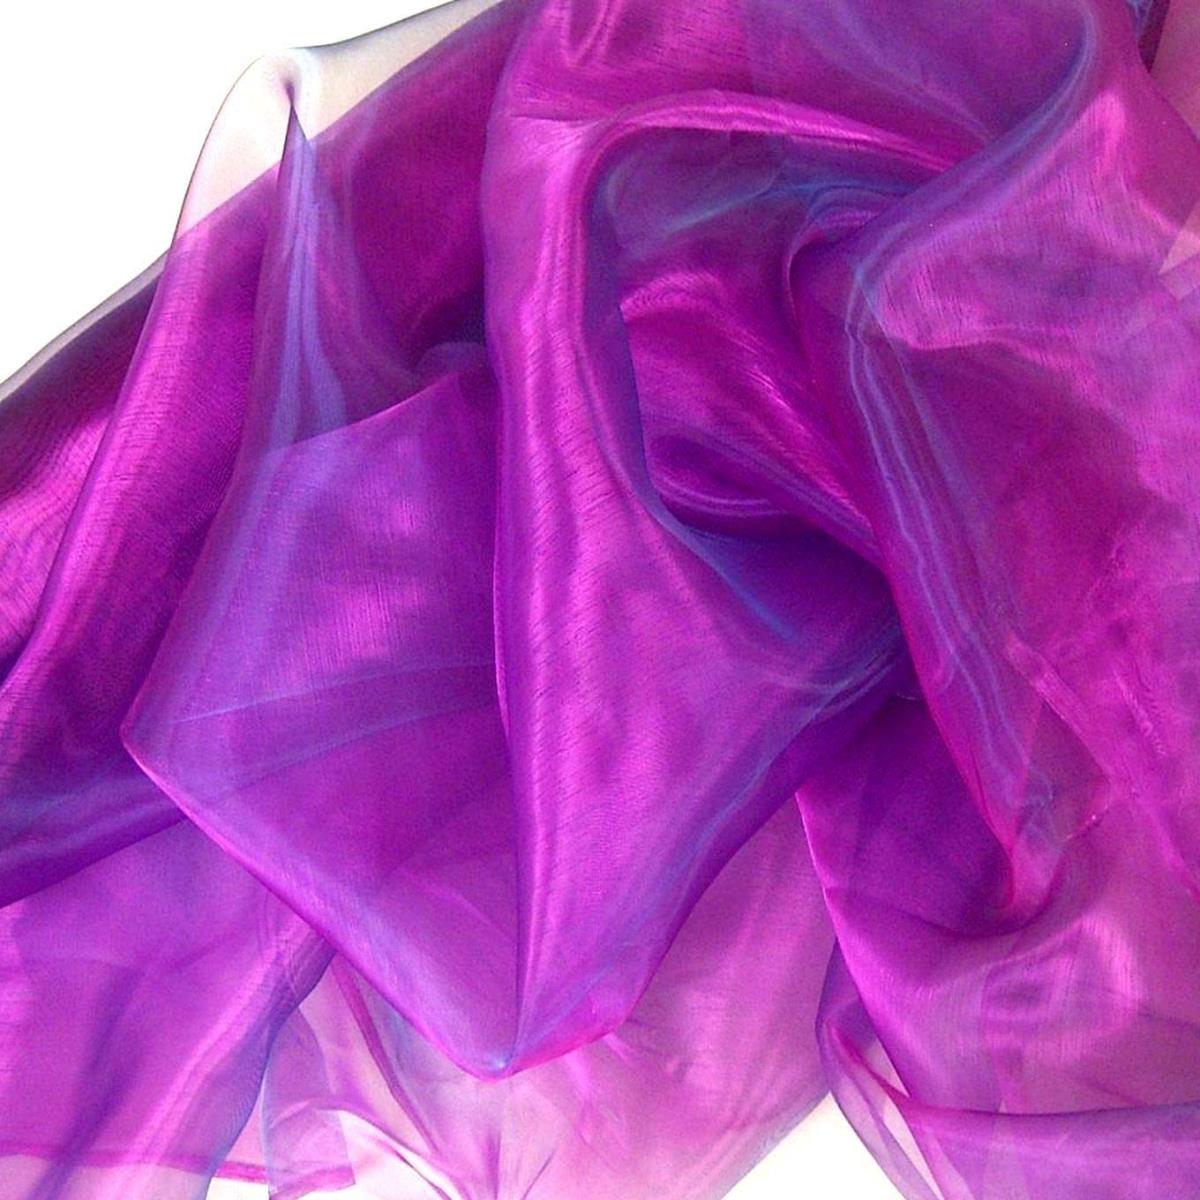 Organza Stoffe zum Nähen Meterware hauchzart fein durchsichtig - purpur violett